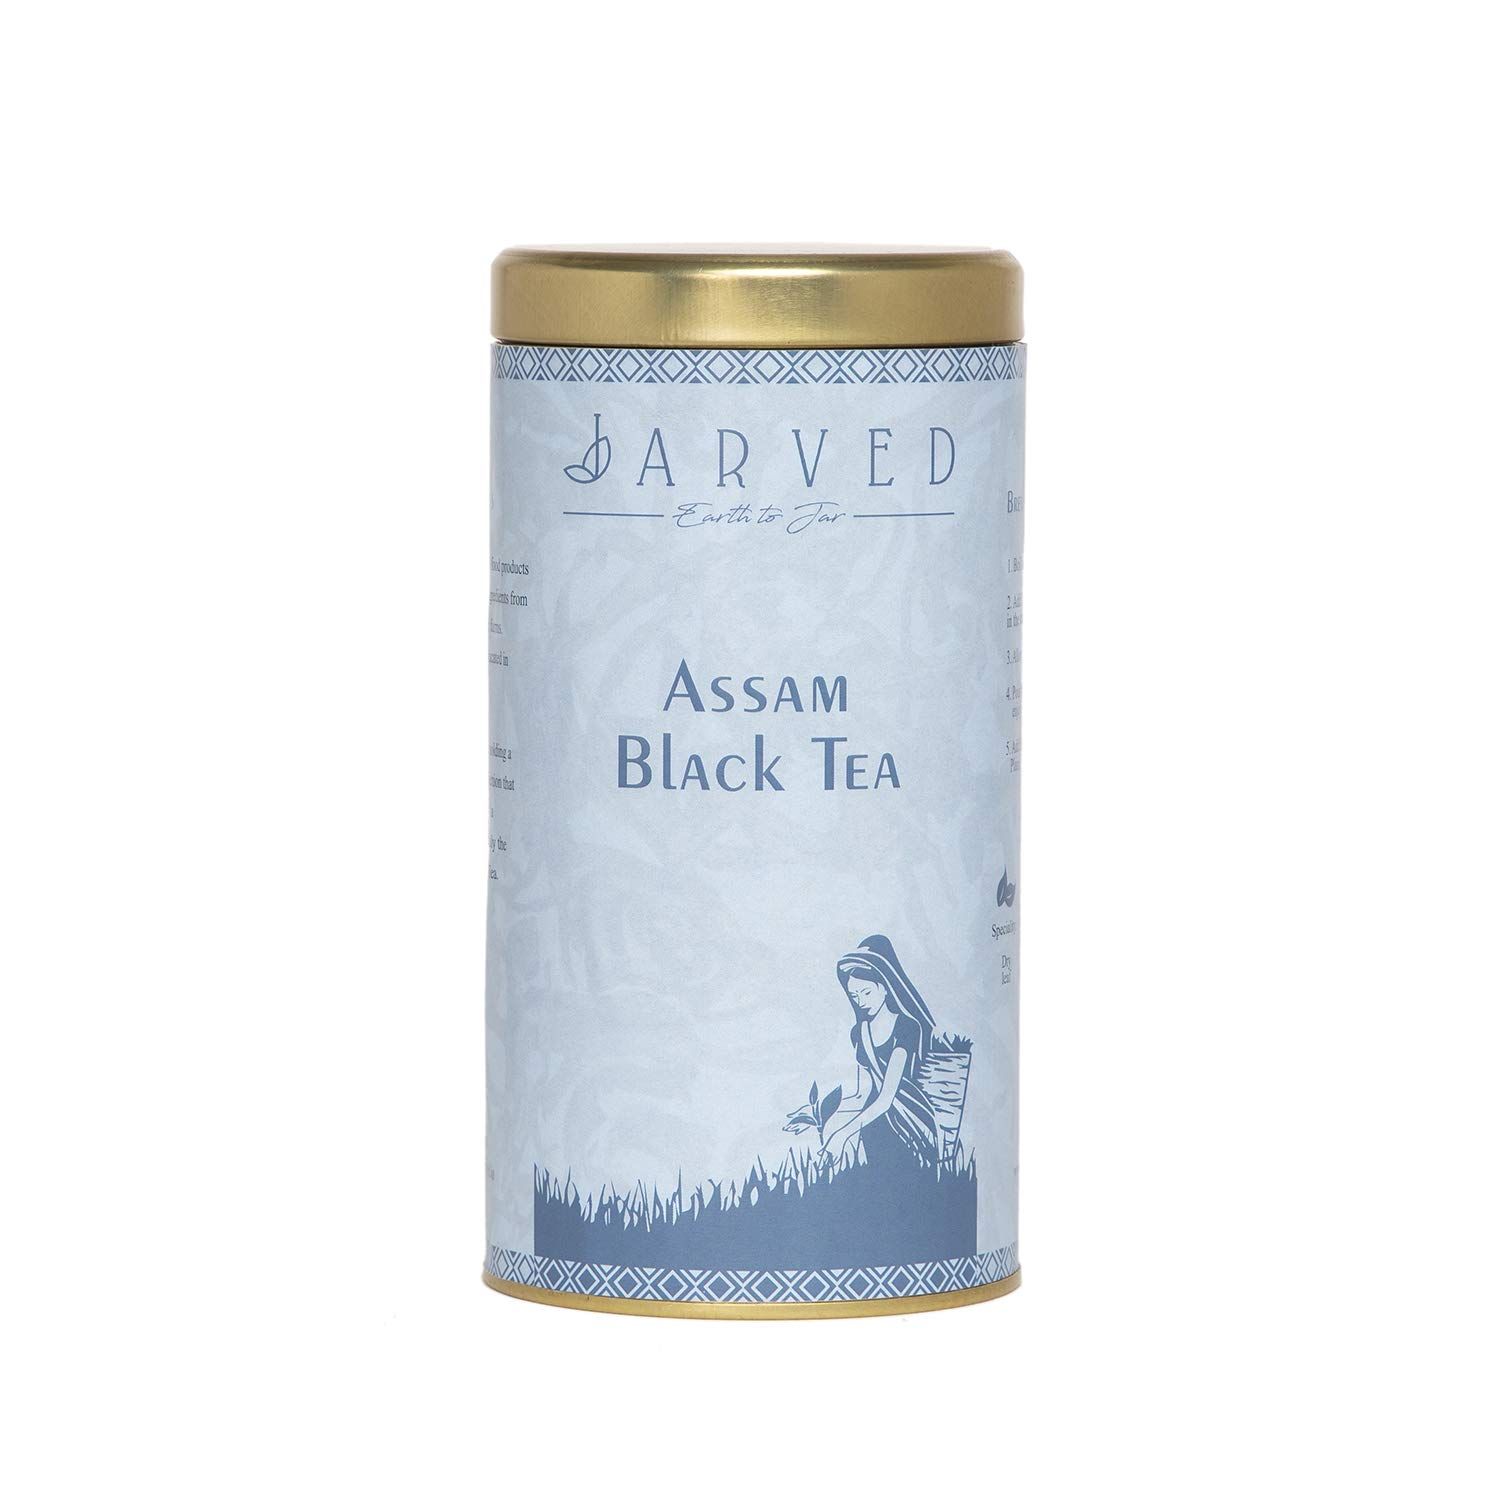 Jarved Assam Black Tea Image